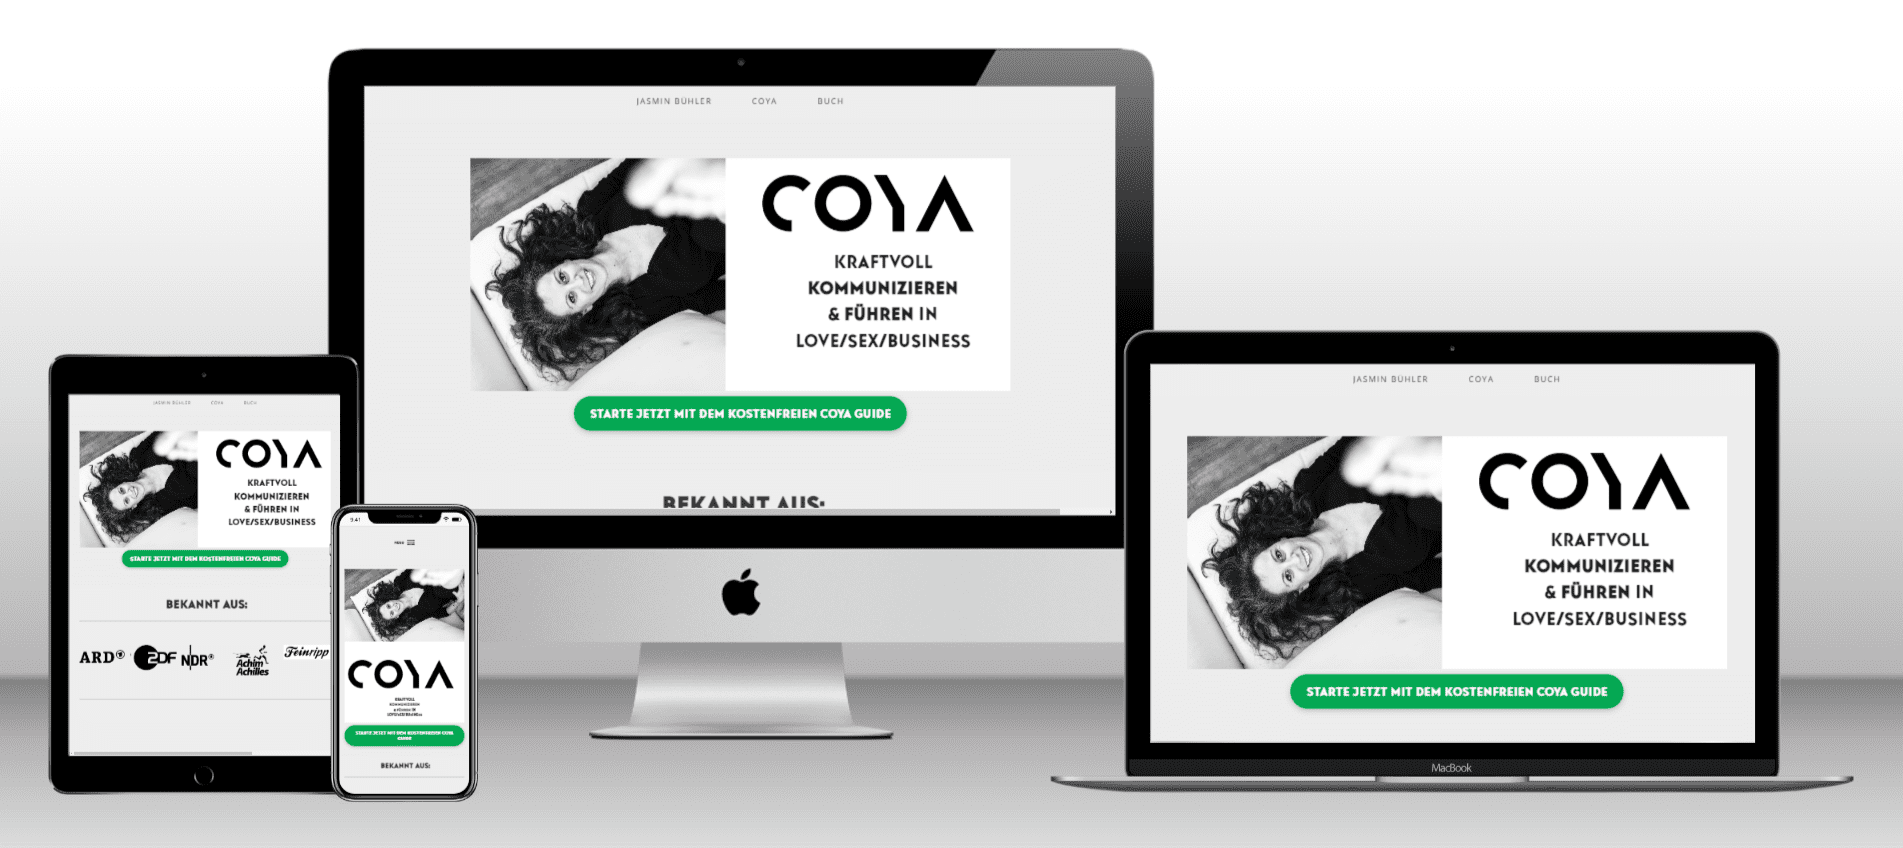 konzept54-online-marketing-portfolio-coya